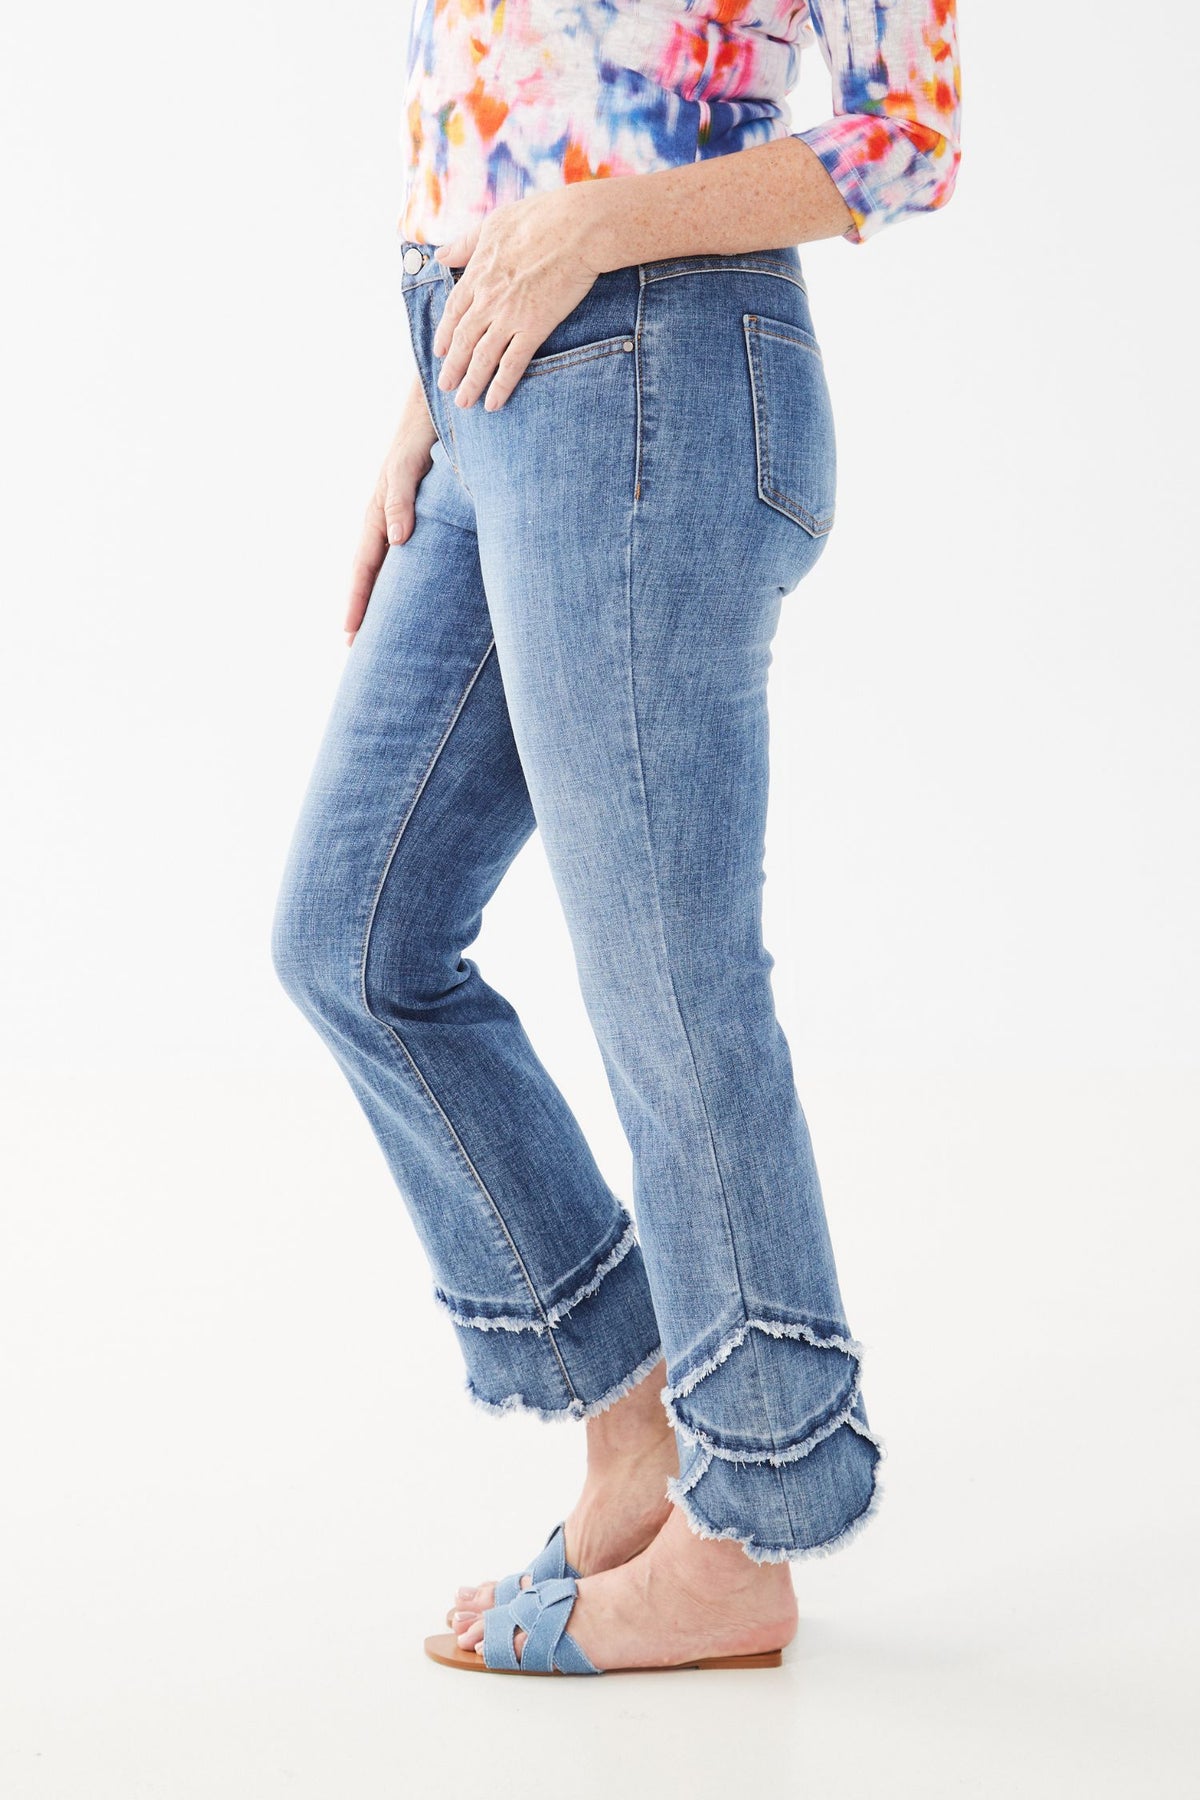 FDJ Olivia Tulip Hem Straight Ankle Jeans - Style 2502809, side